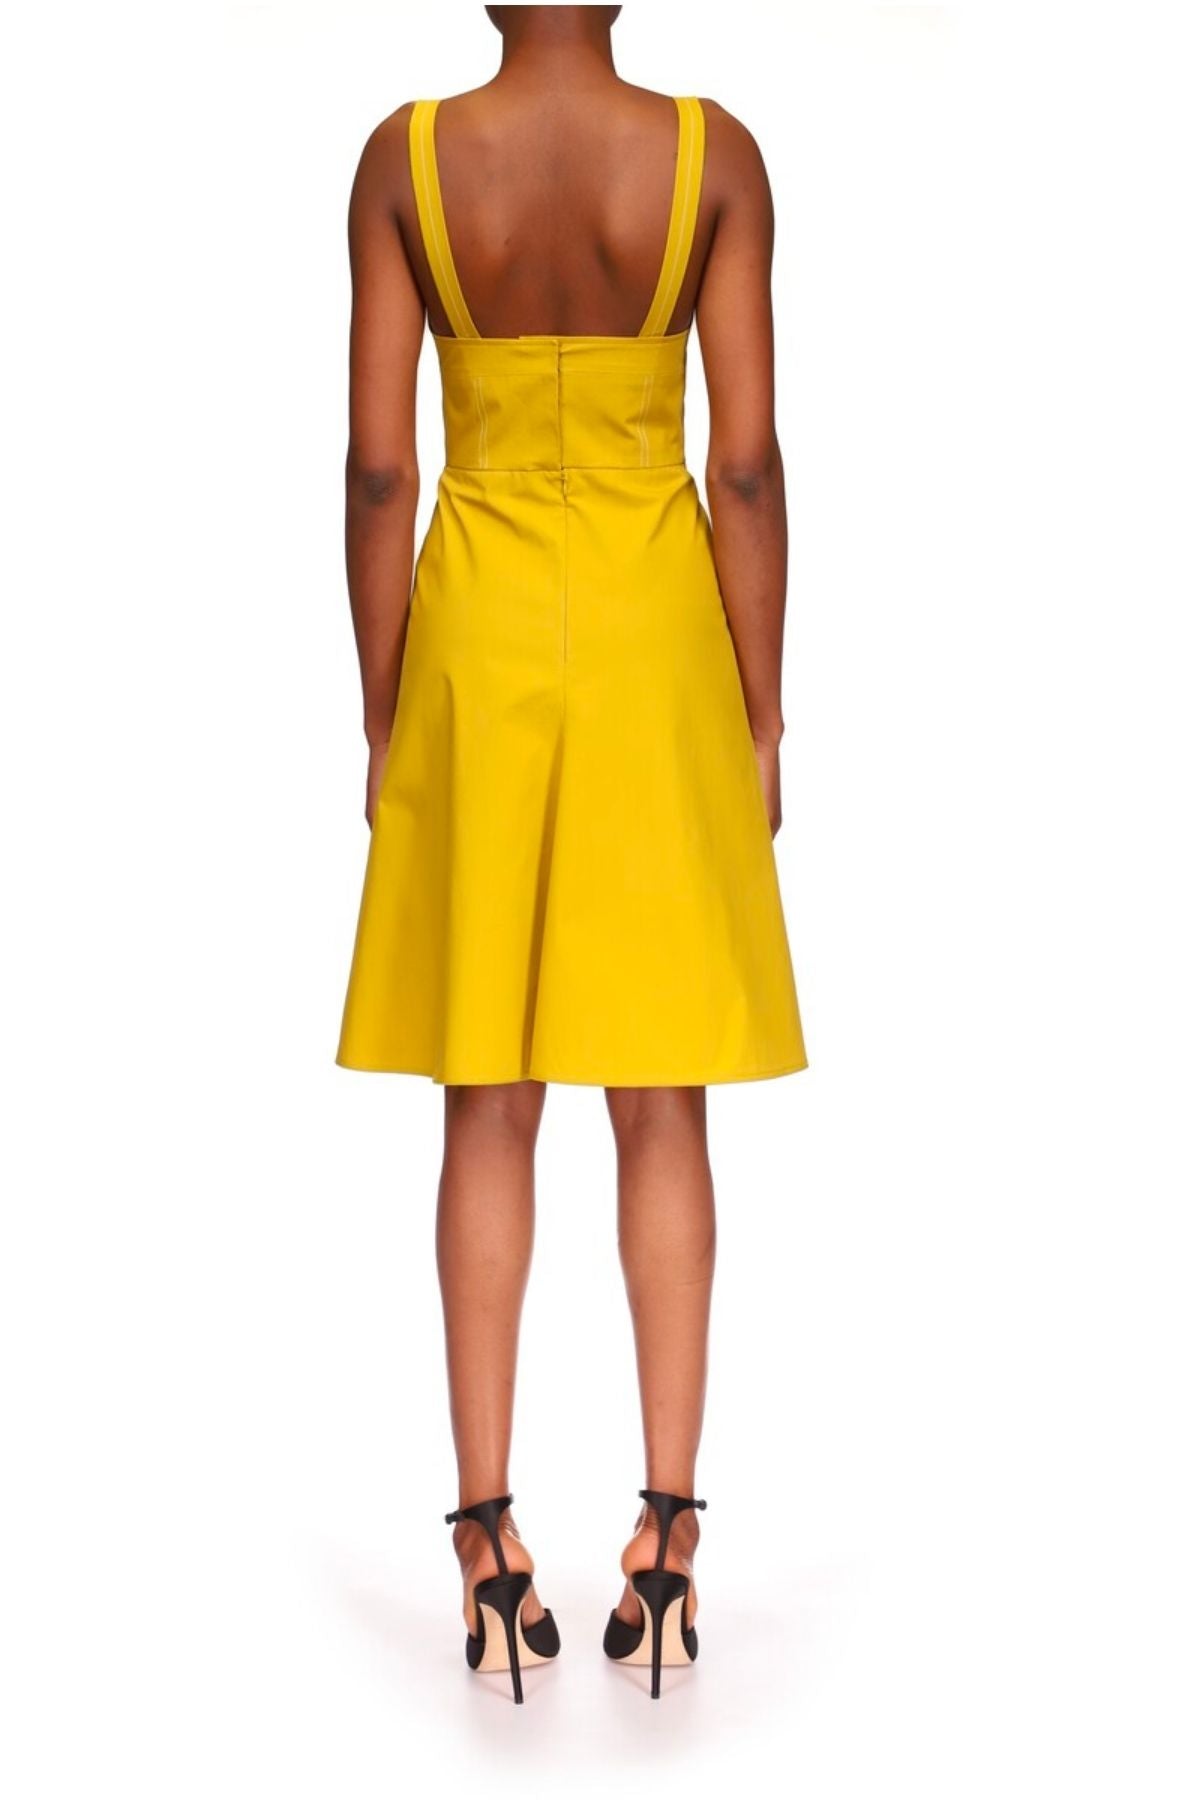 Victoria Beckham Bra Detail Cotton Dress - Yellow Ochre